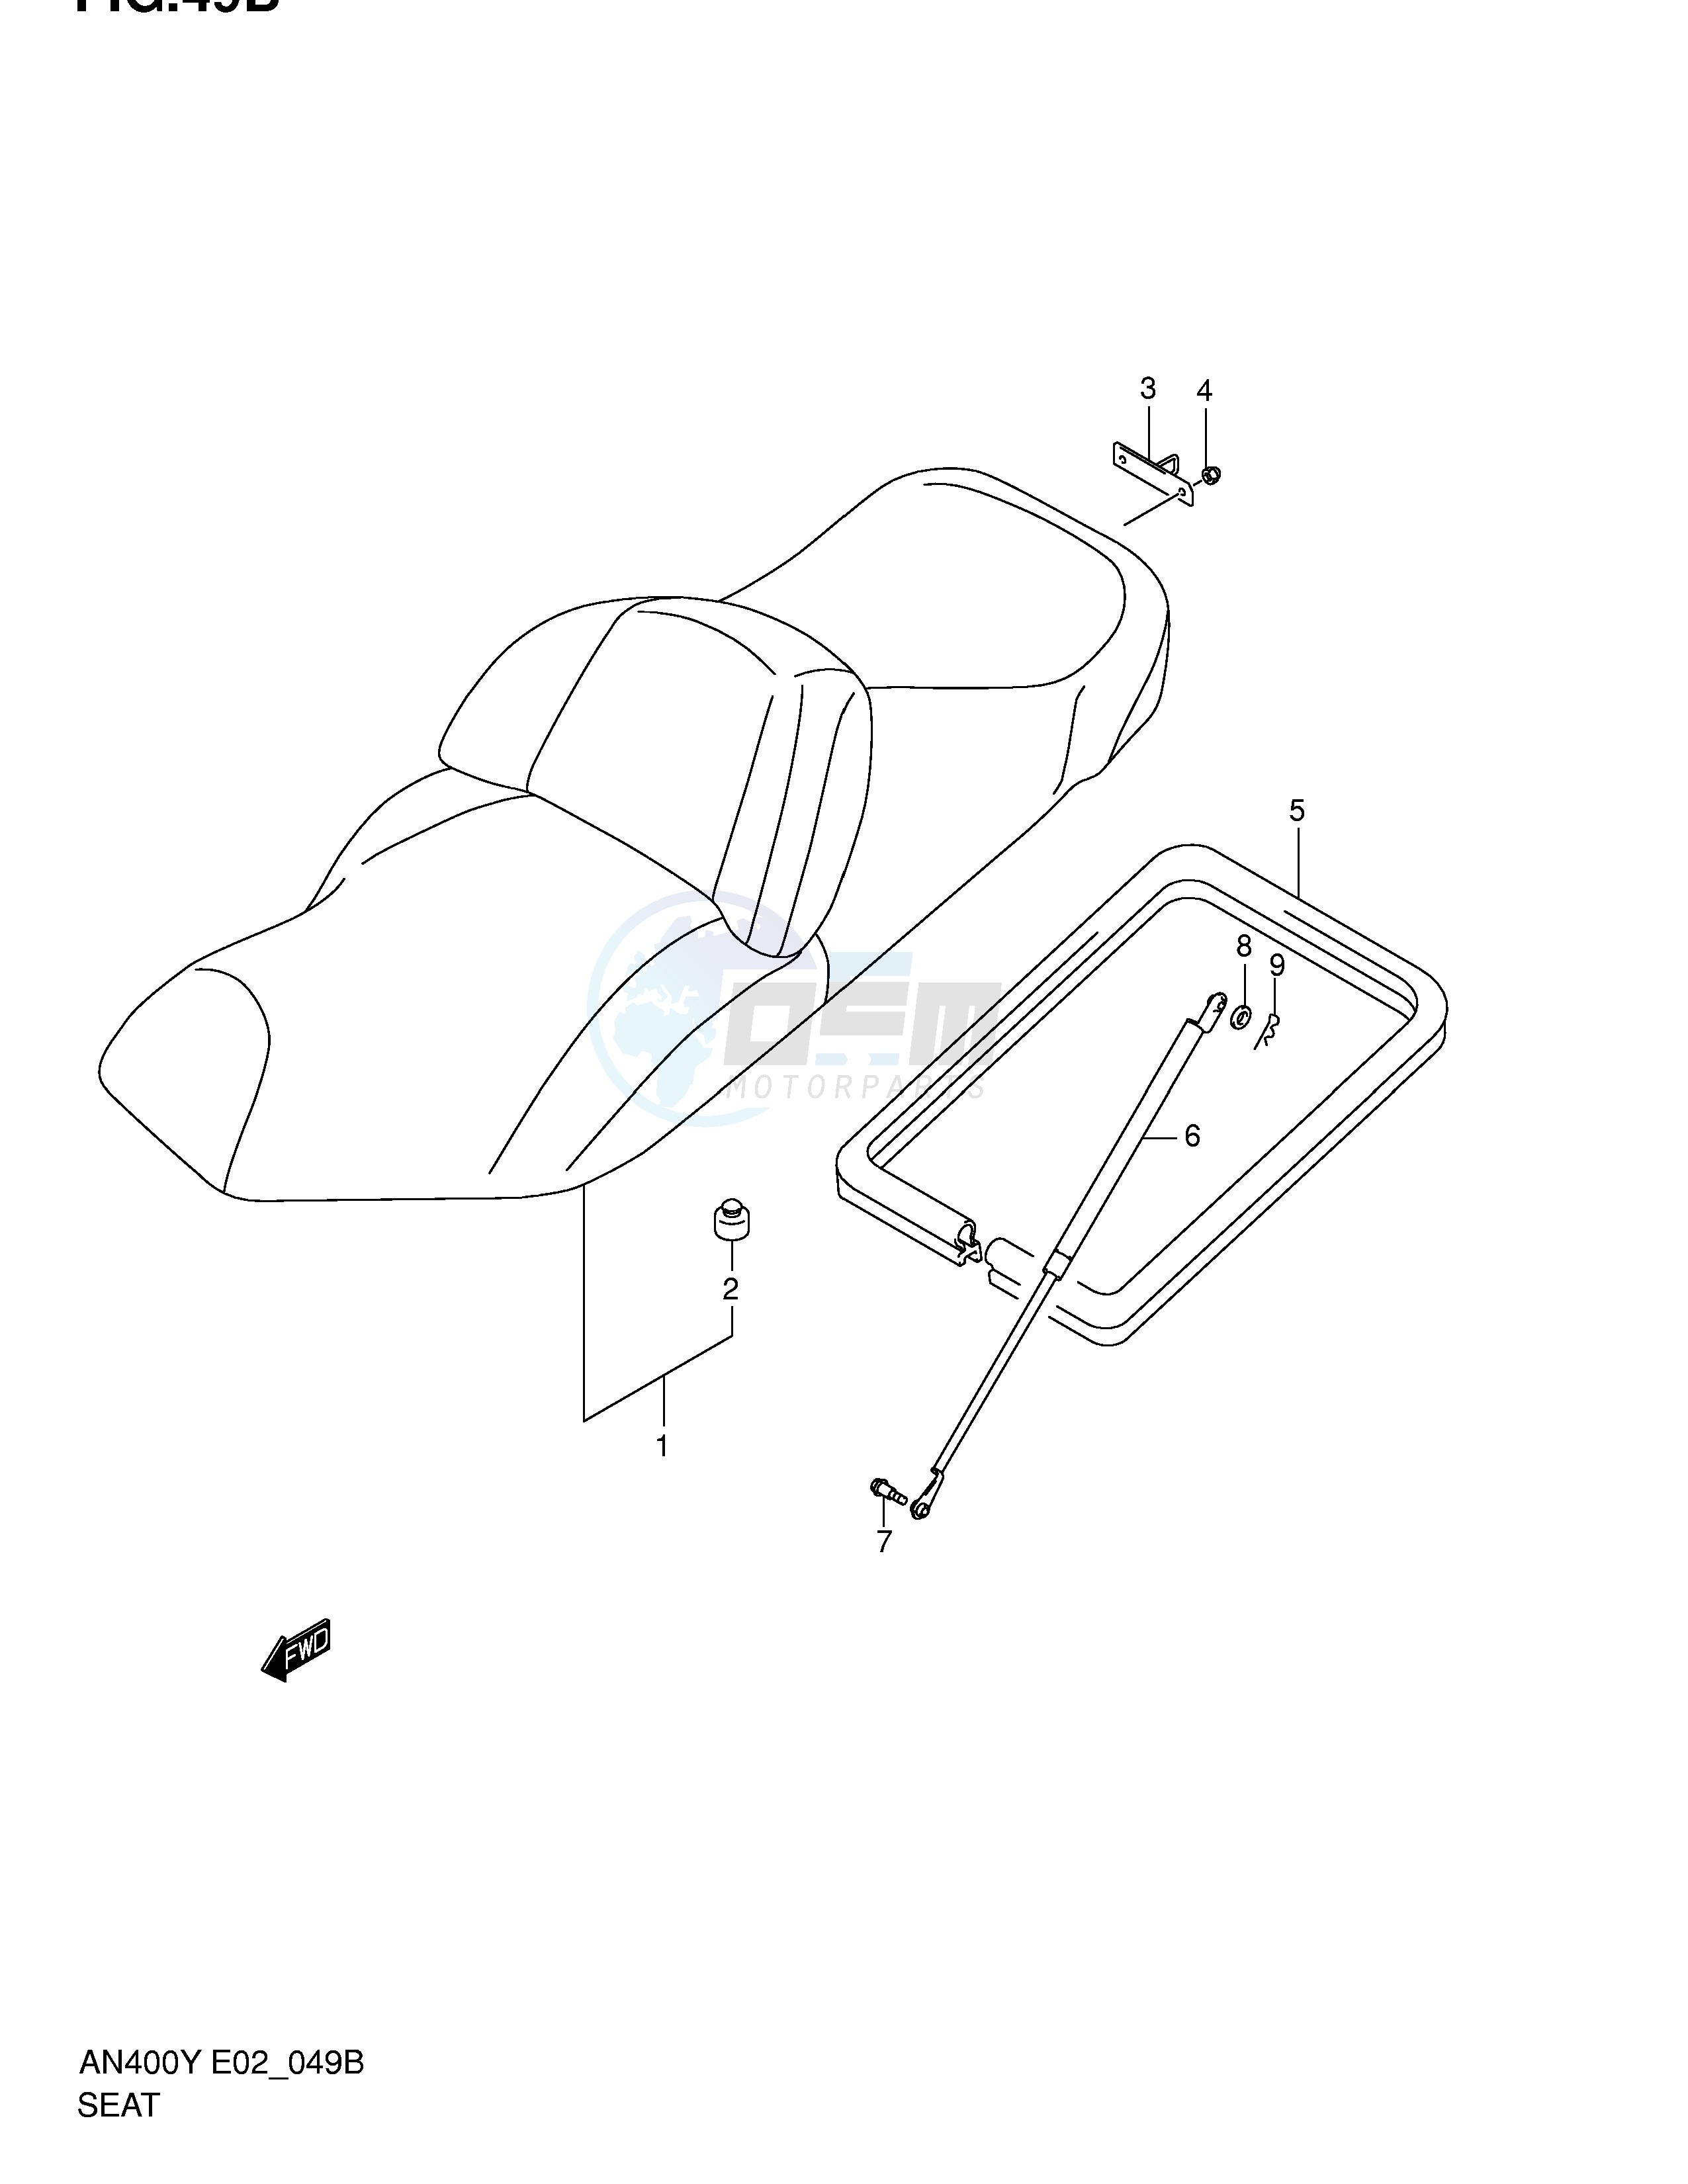 SEAT (AN400RK2) blueprint